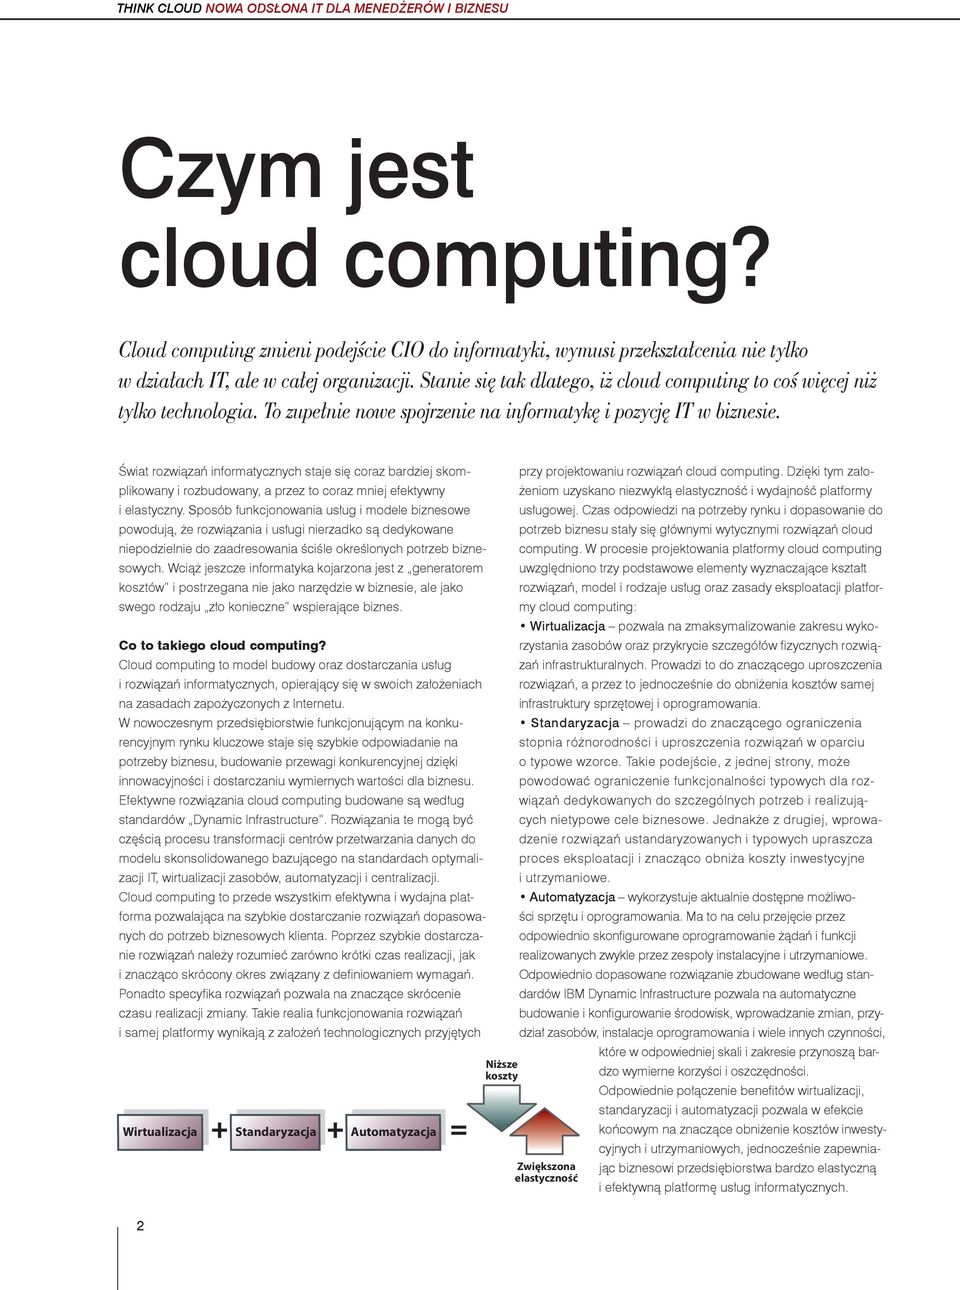 Stanie się tak dlatego, iż cloud computing to coś więcej niż tylko technologia. To zupełnie nowe spojrzenie na informatykę i pozycję IT w biznesie.